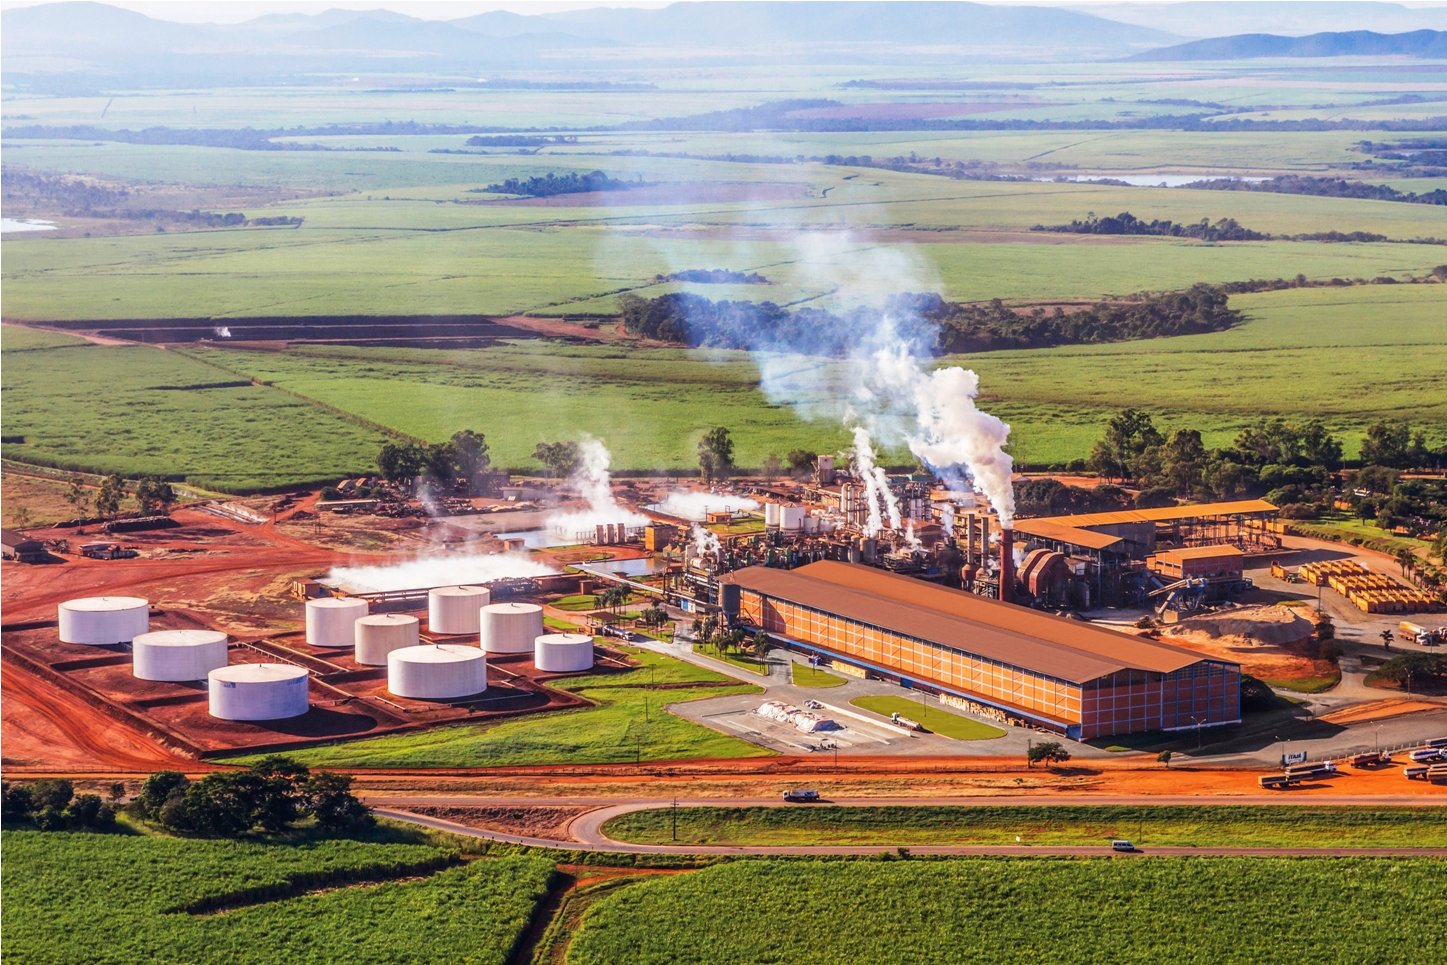 Jalles Machado processa 5,4 milhões de toneladas na safra 2021/22